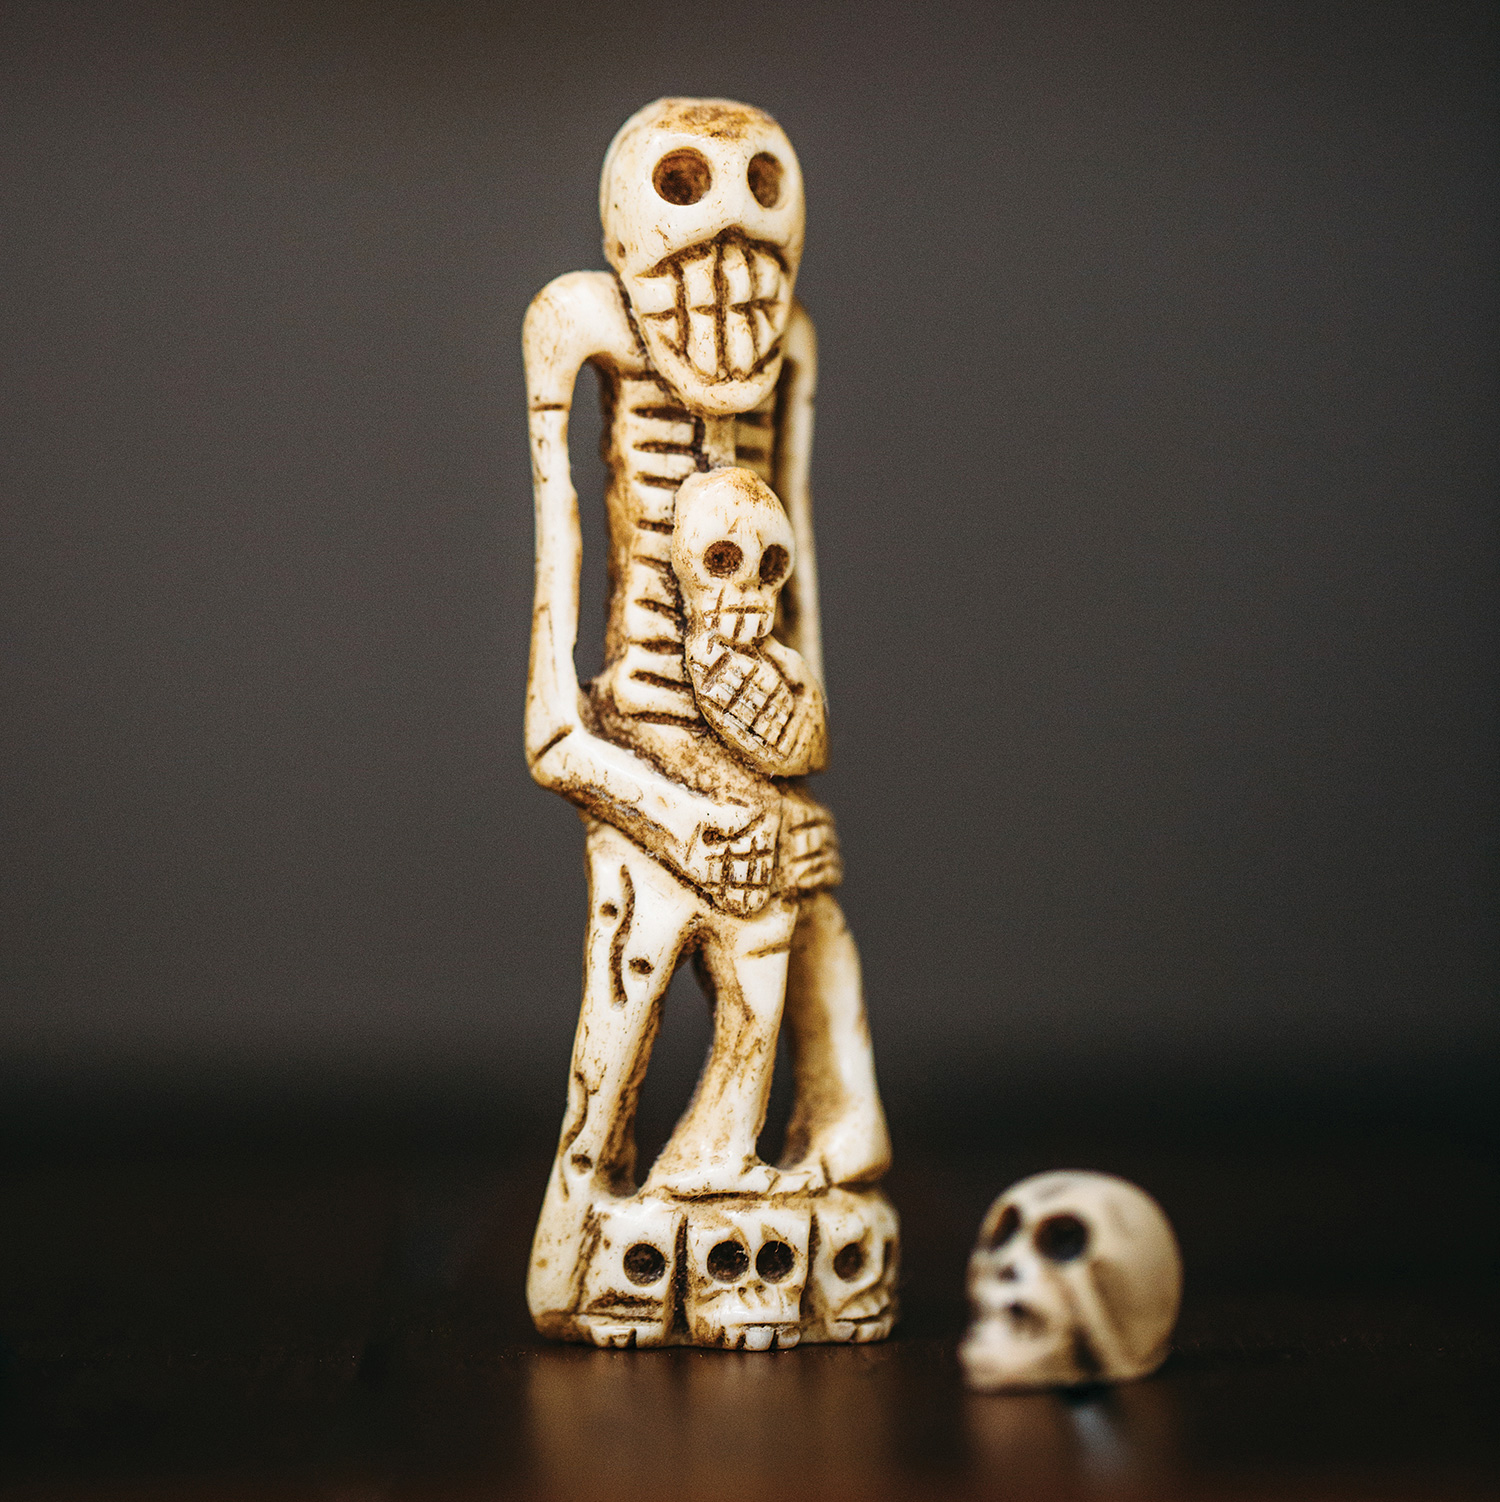 Skeletons and skulls